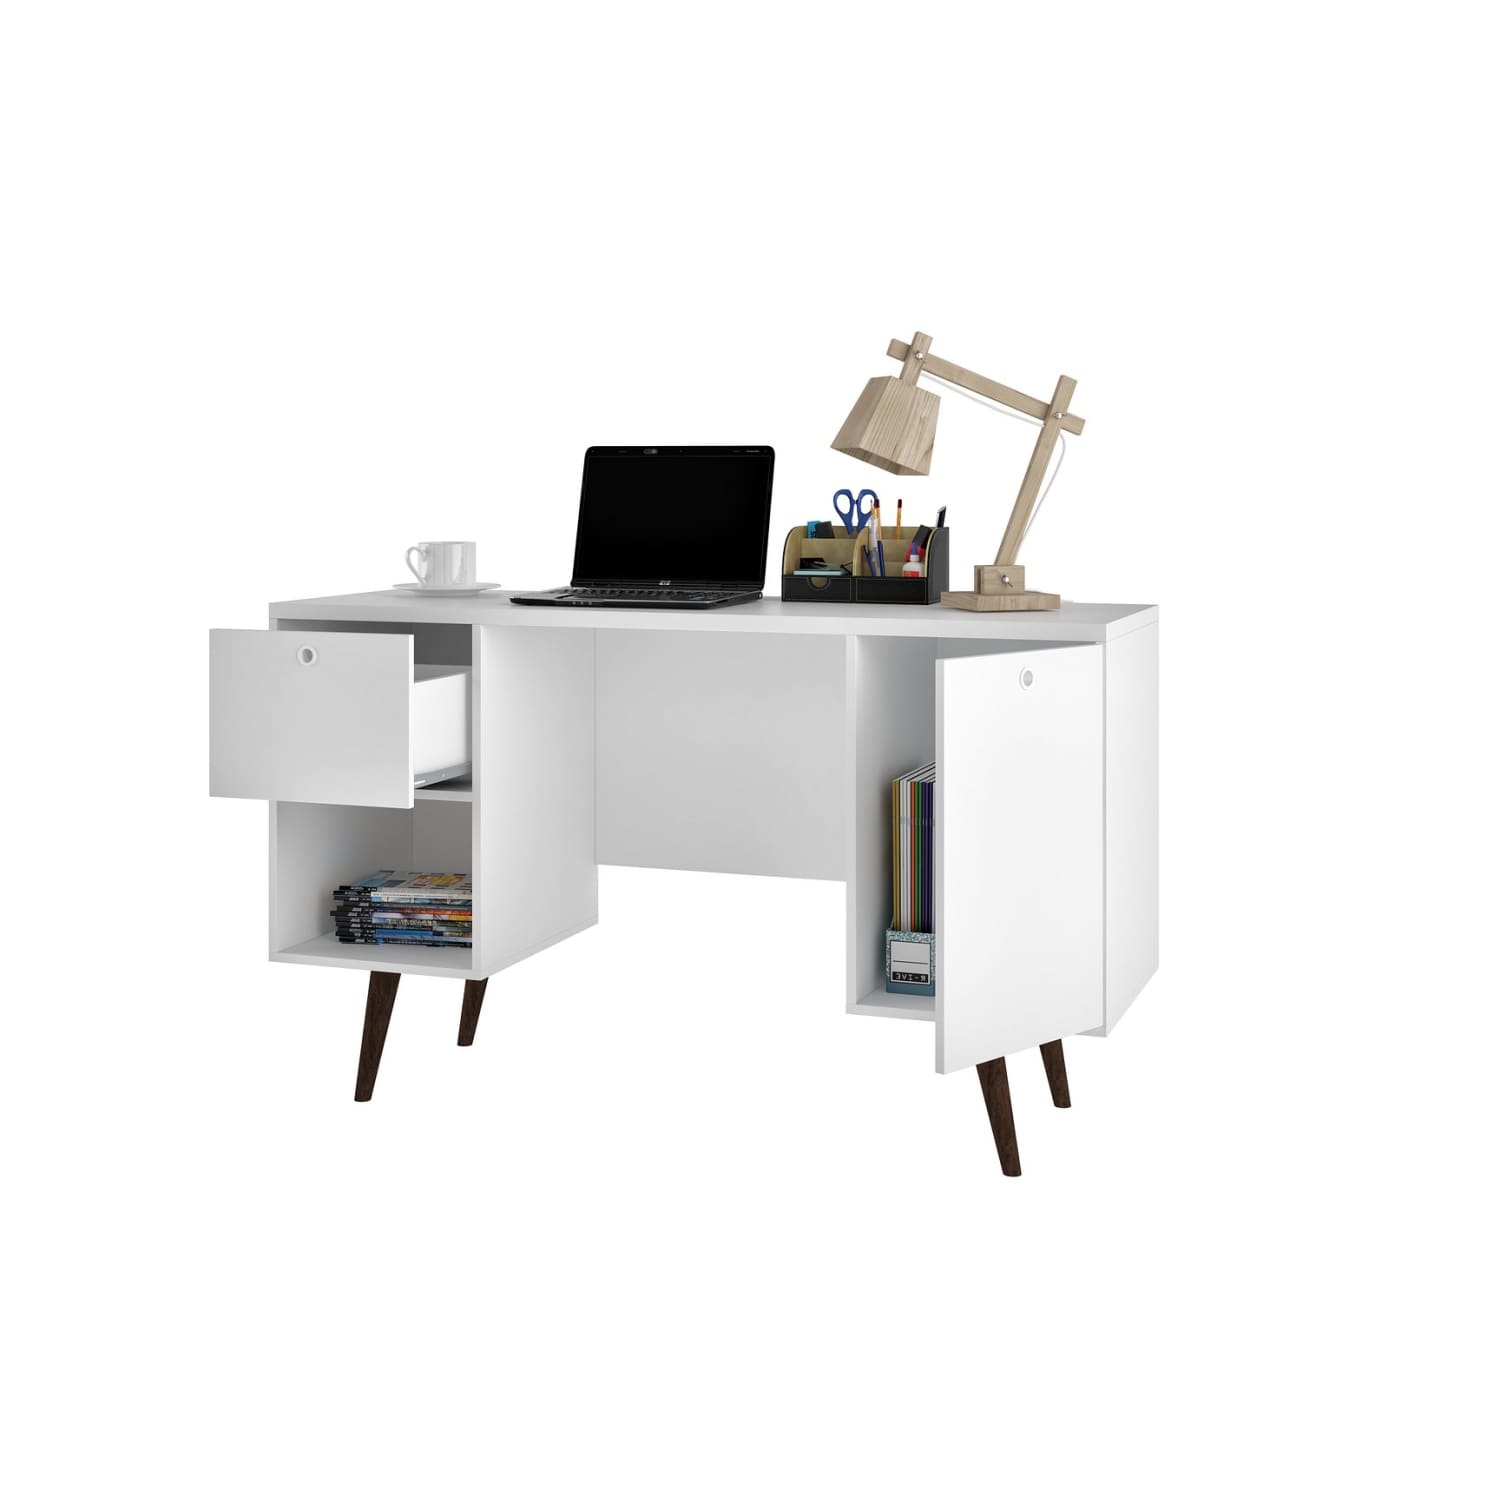 Manhattan Comfort Edgar 1-Drawer Mid-Century Office Desk in 